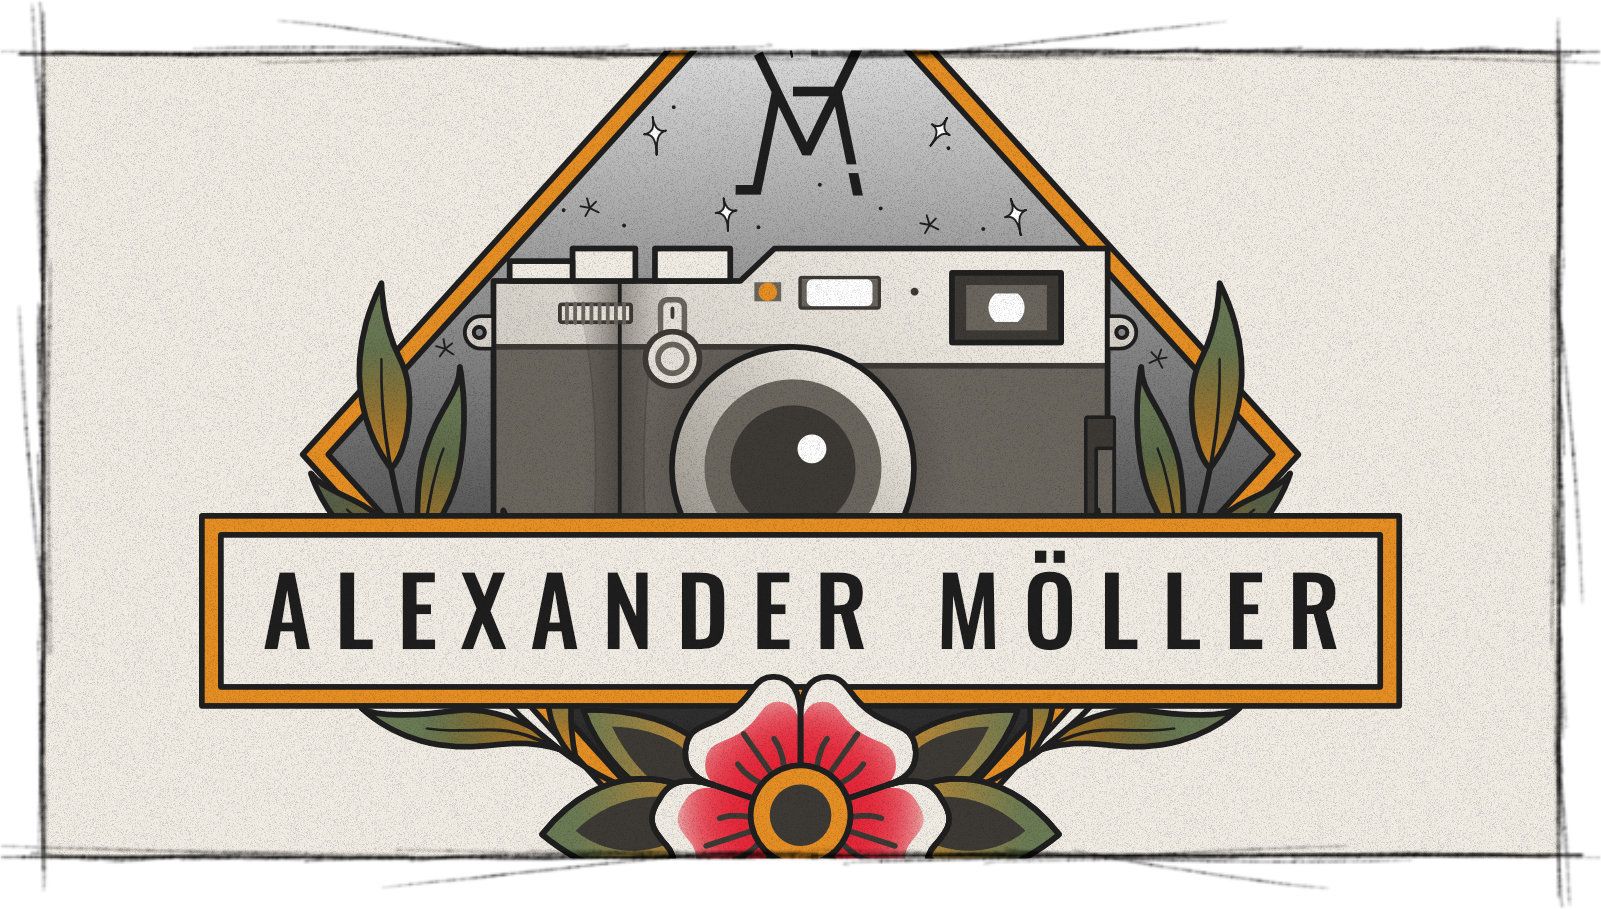 Das Titelbild der Projektvorstellung für das Personal Branding für Alex Möller Fotografie zeigt ein Ausschnitt des Logos, das aus einer Vektor-Illustration von einer Kamera, einer Blume und Blättern besteht.